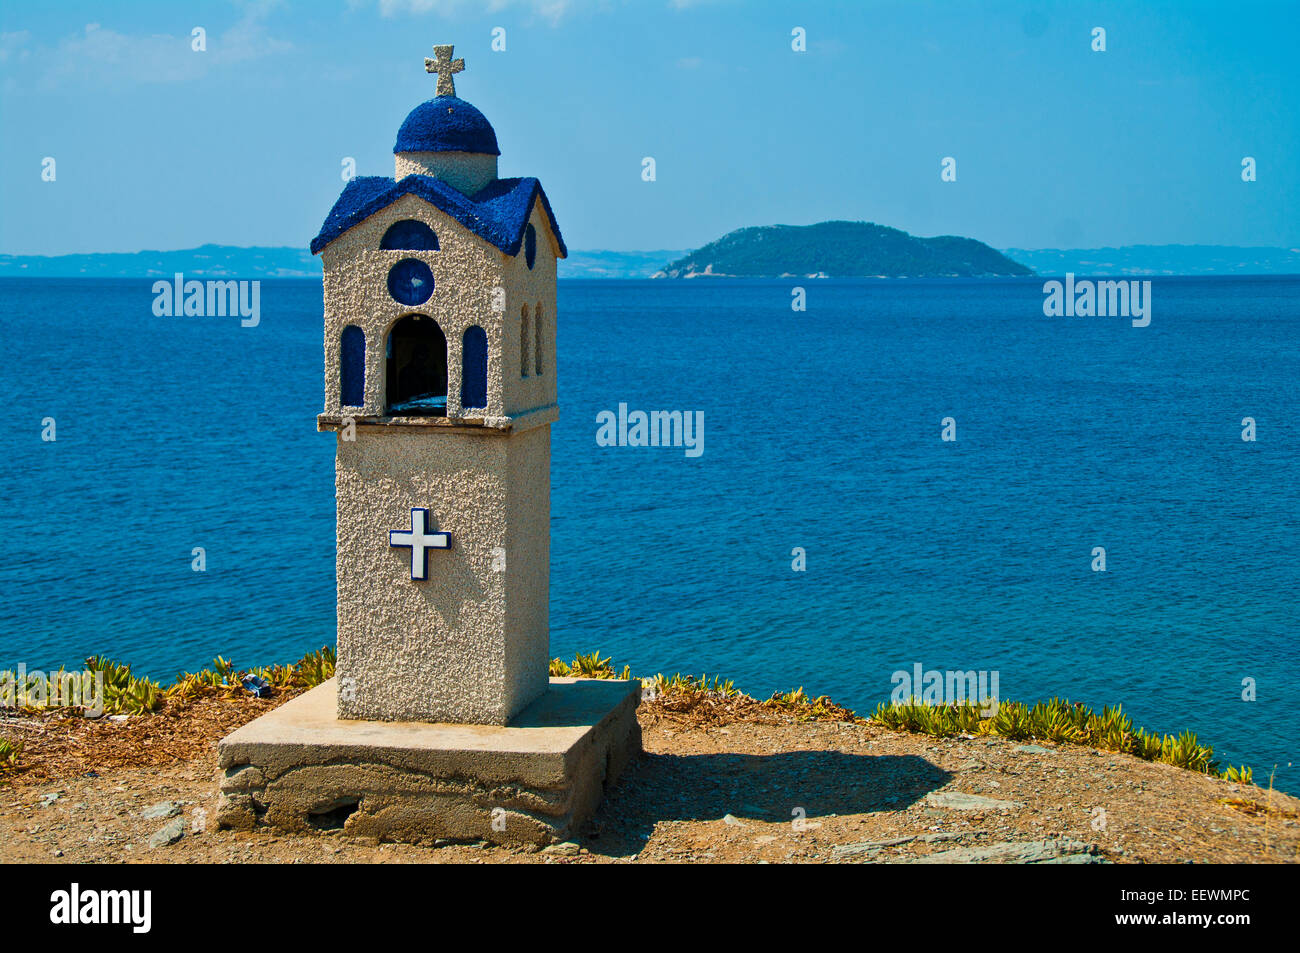 Arquitectura; bella; belleza; azul; la construcción; la iglesia; costa; color; cultura; noche; vacaciones; Isla; islas; landmark Foto de stock